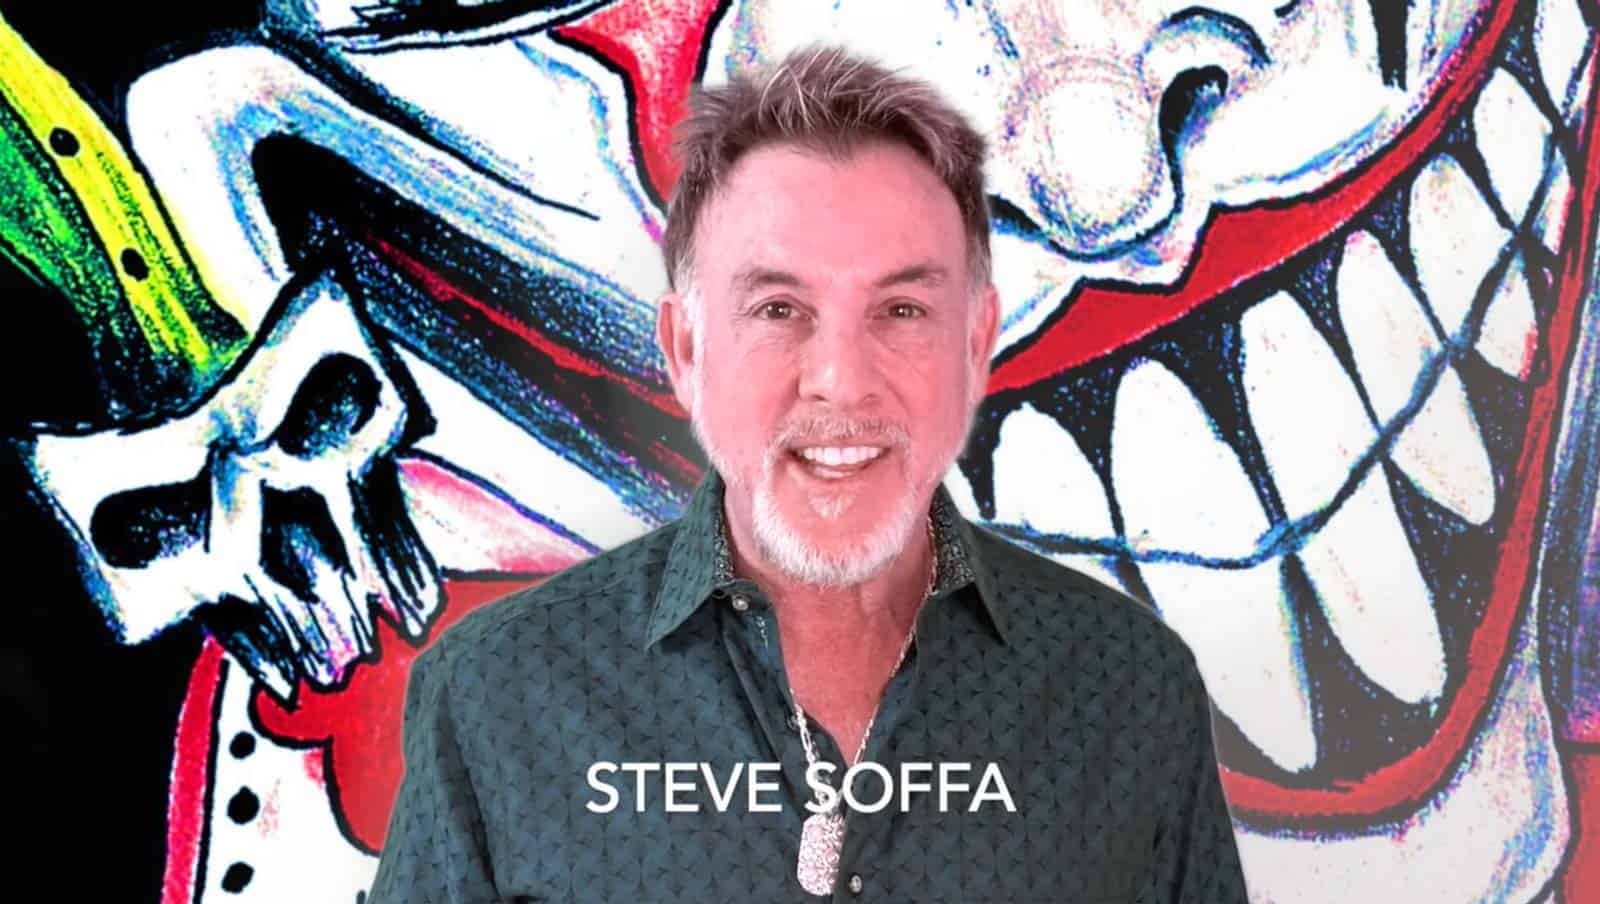 Steve Soffa